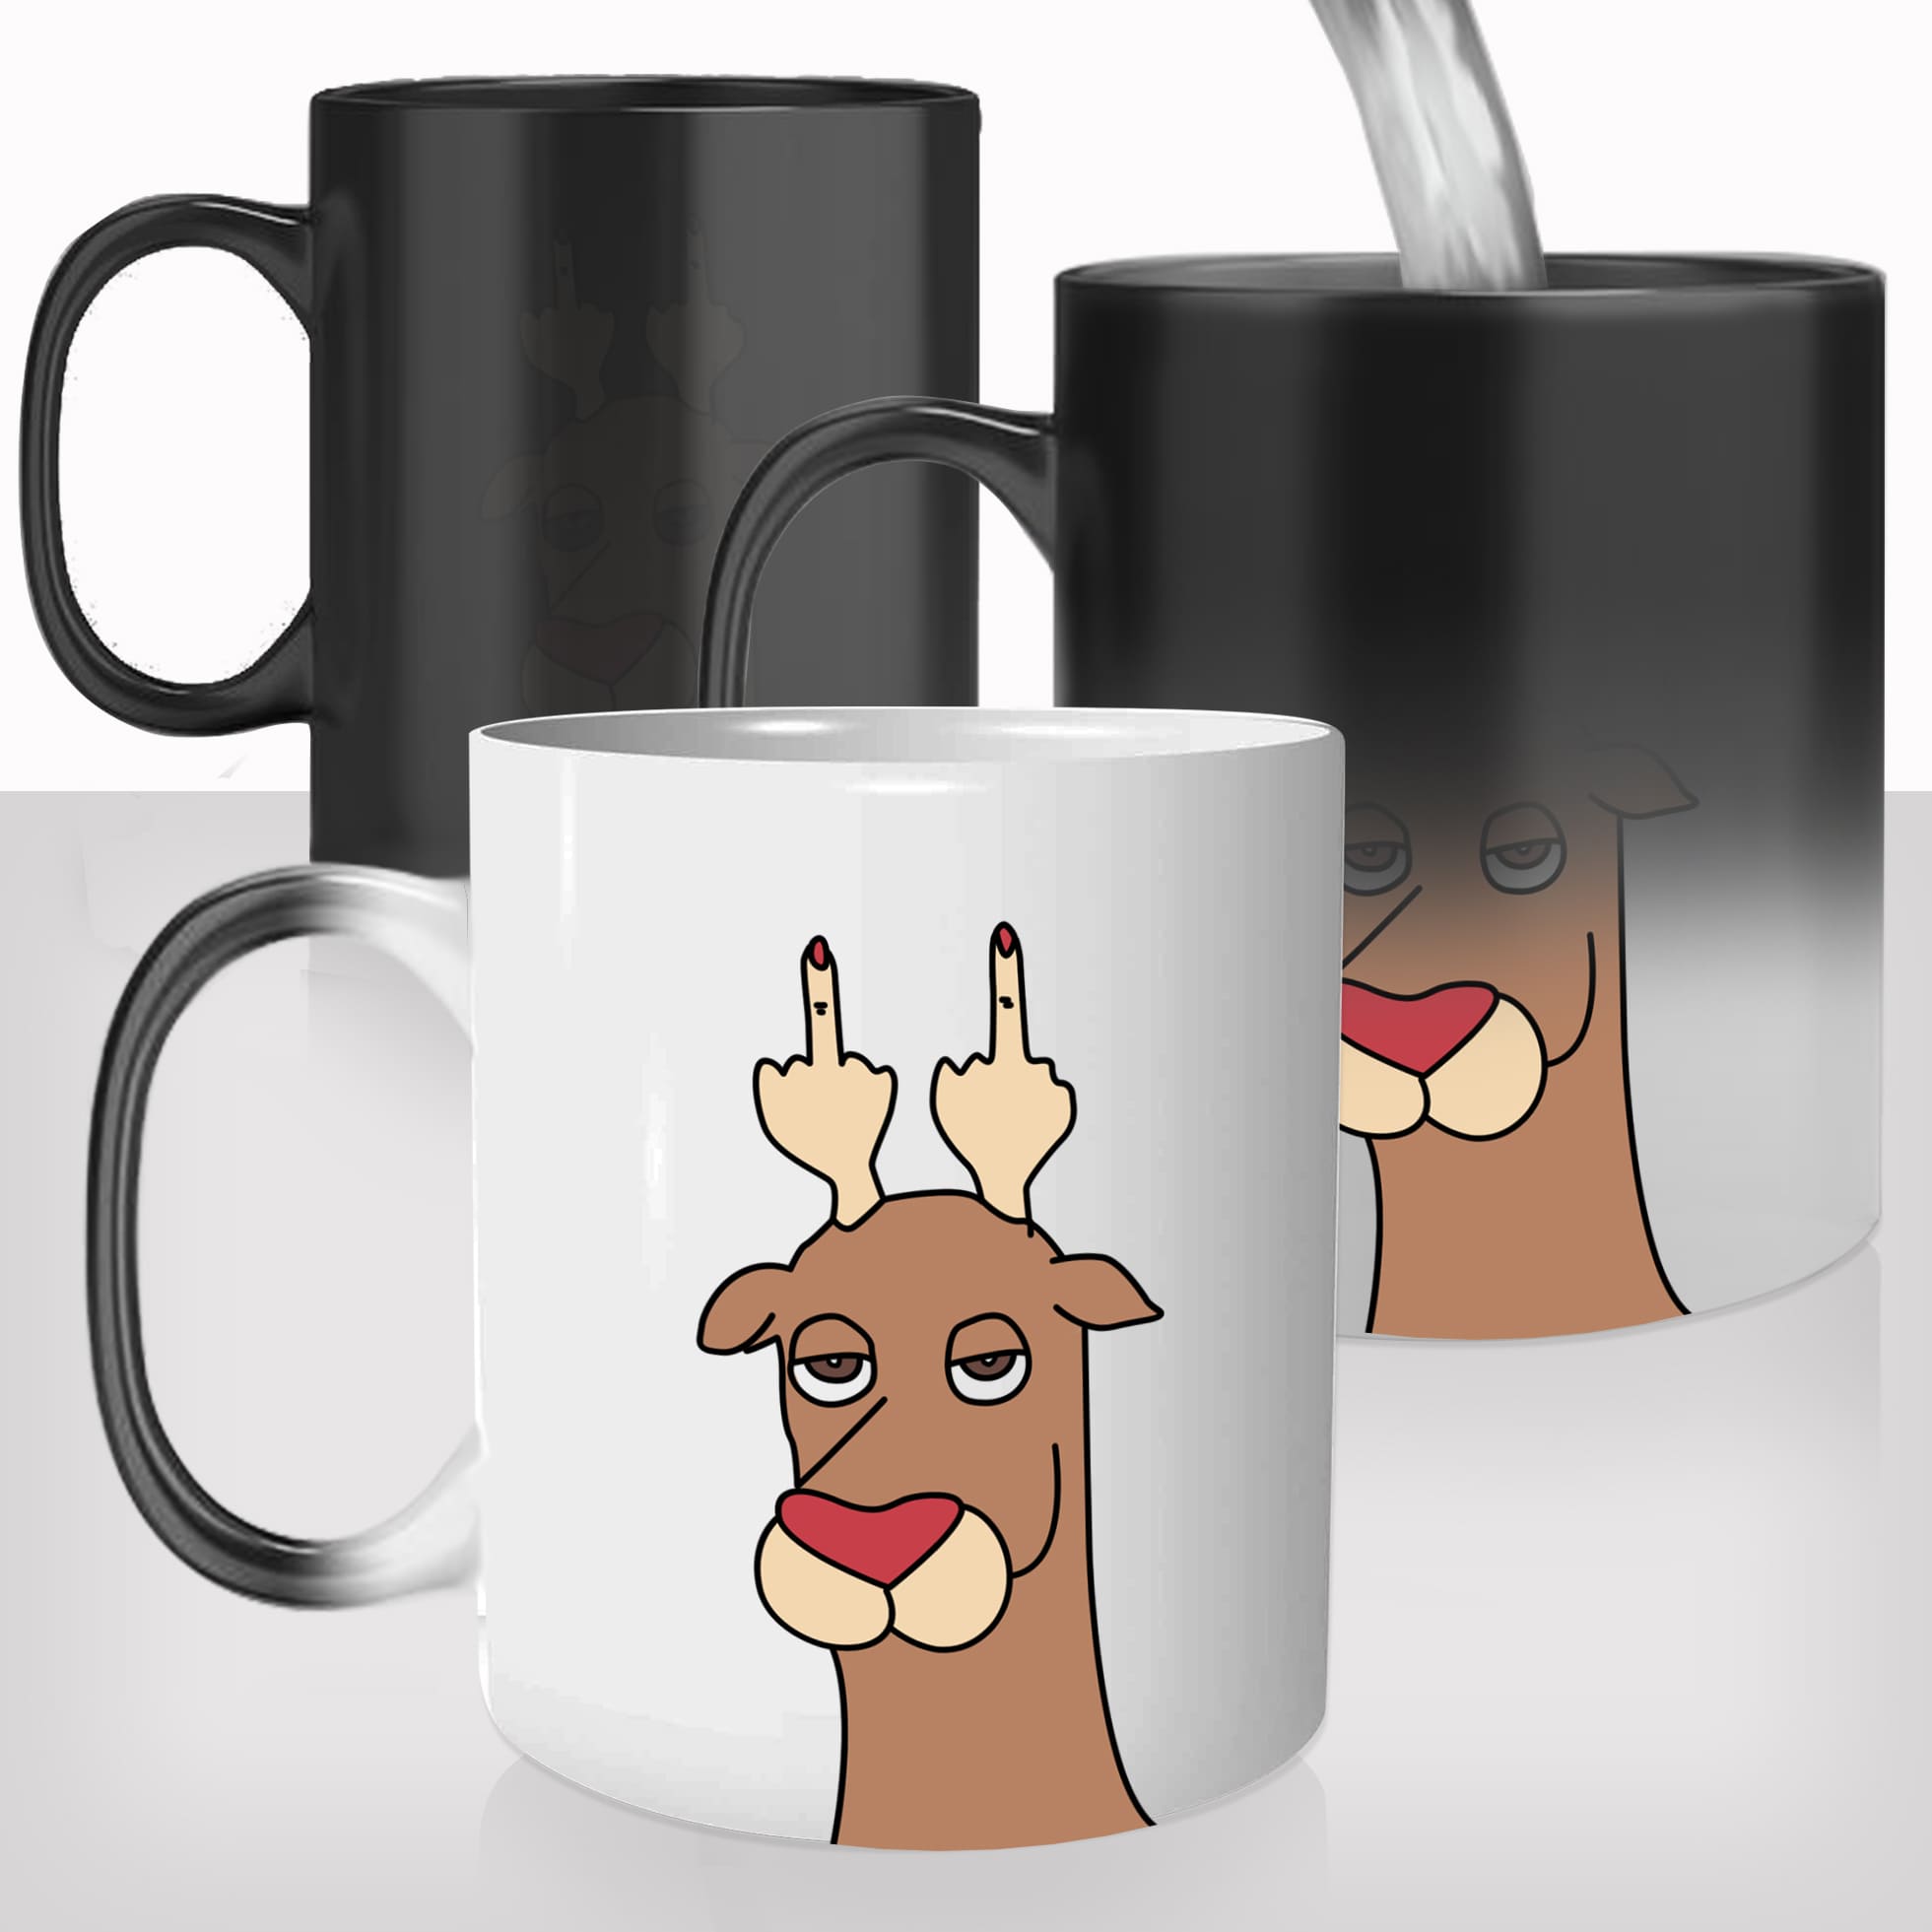 mug-magique-themique-thermo-reactif-tasse-personnalisé-renne-fuck-drole-joyeux-noël-decembre-christmas-idée-cadeau-offrir-fun